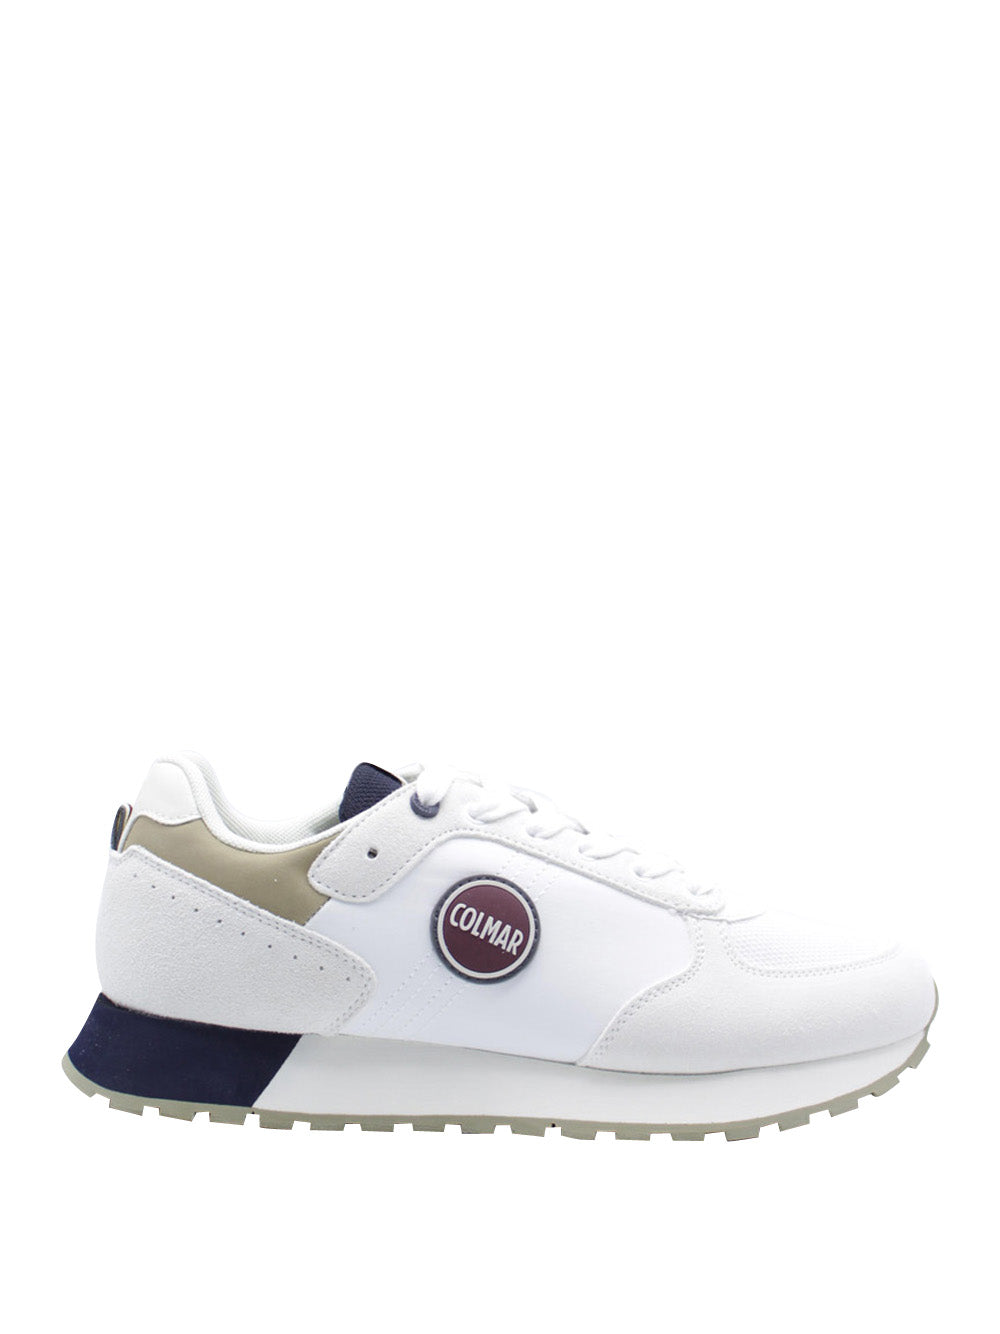 COLMAR Sneakers Uomo - Bianco modello TRAVISACTUAL